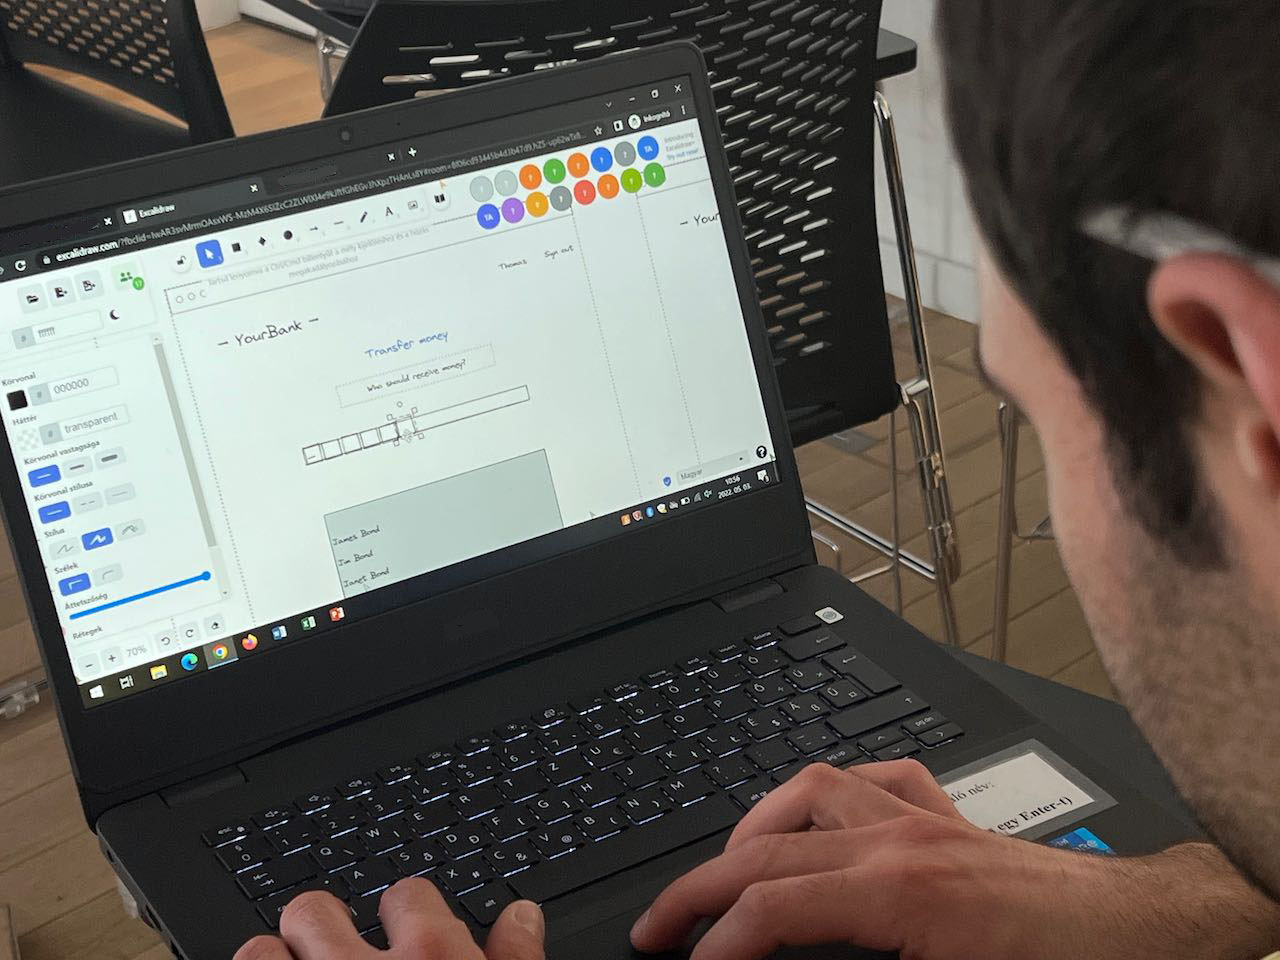 Egy tanteremben elhelyezett laptop képernyőjét mutatja a kép. A laptop képernyőjén látható, hogy egy kollaborációs felületen sok diák egyszerre dolgozik együtt.